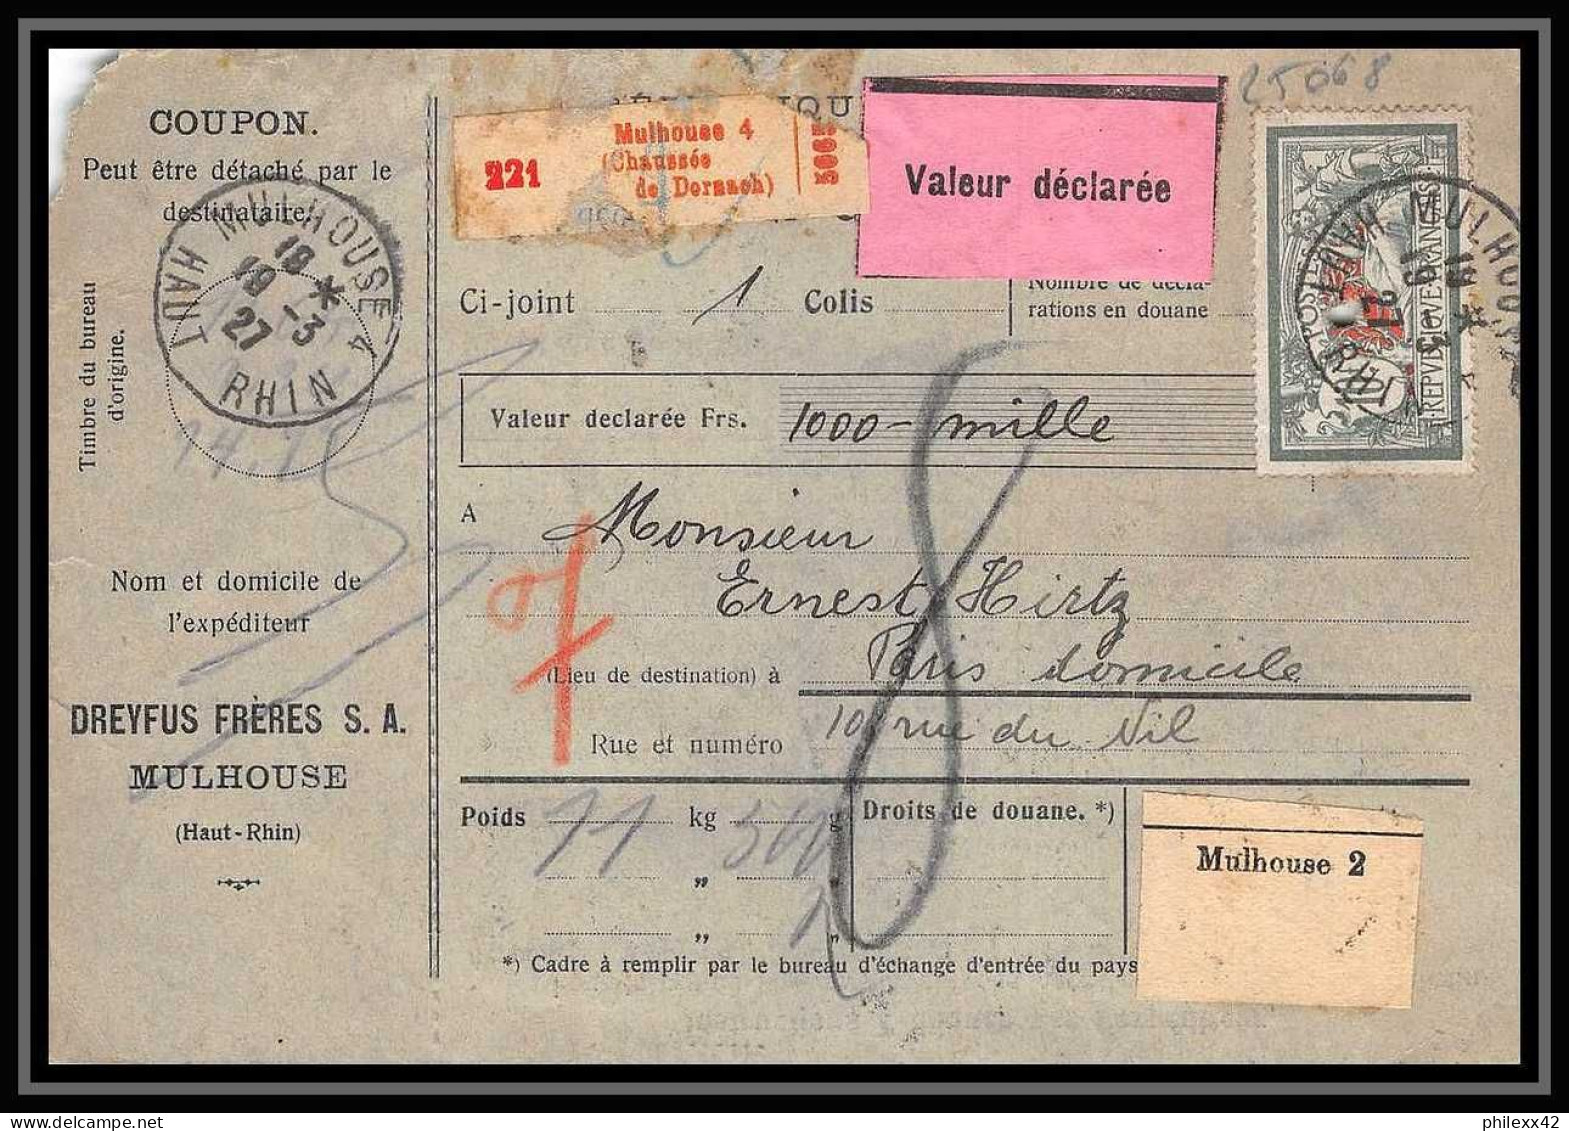 25068 Bulletin D'expédition France Colis Postaux Fiscal Haut Rhin - 1927 Mulhouse Semeuse + Merson Valeur Déclarée - Brieven & Documenten